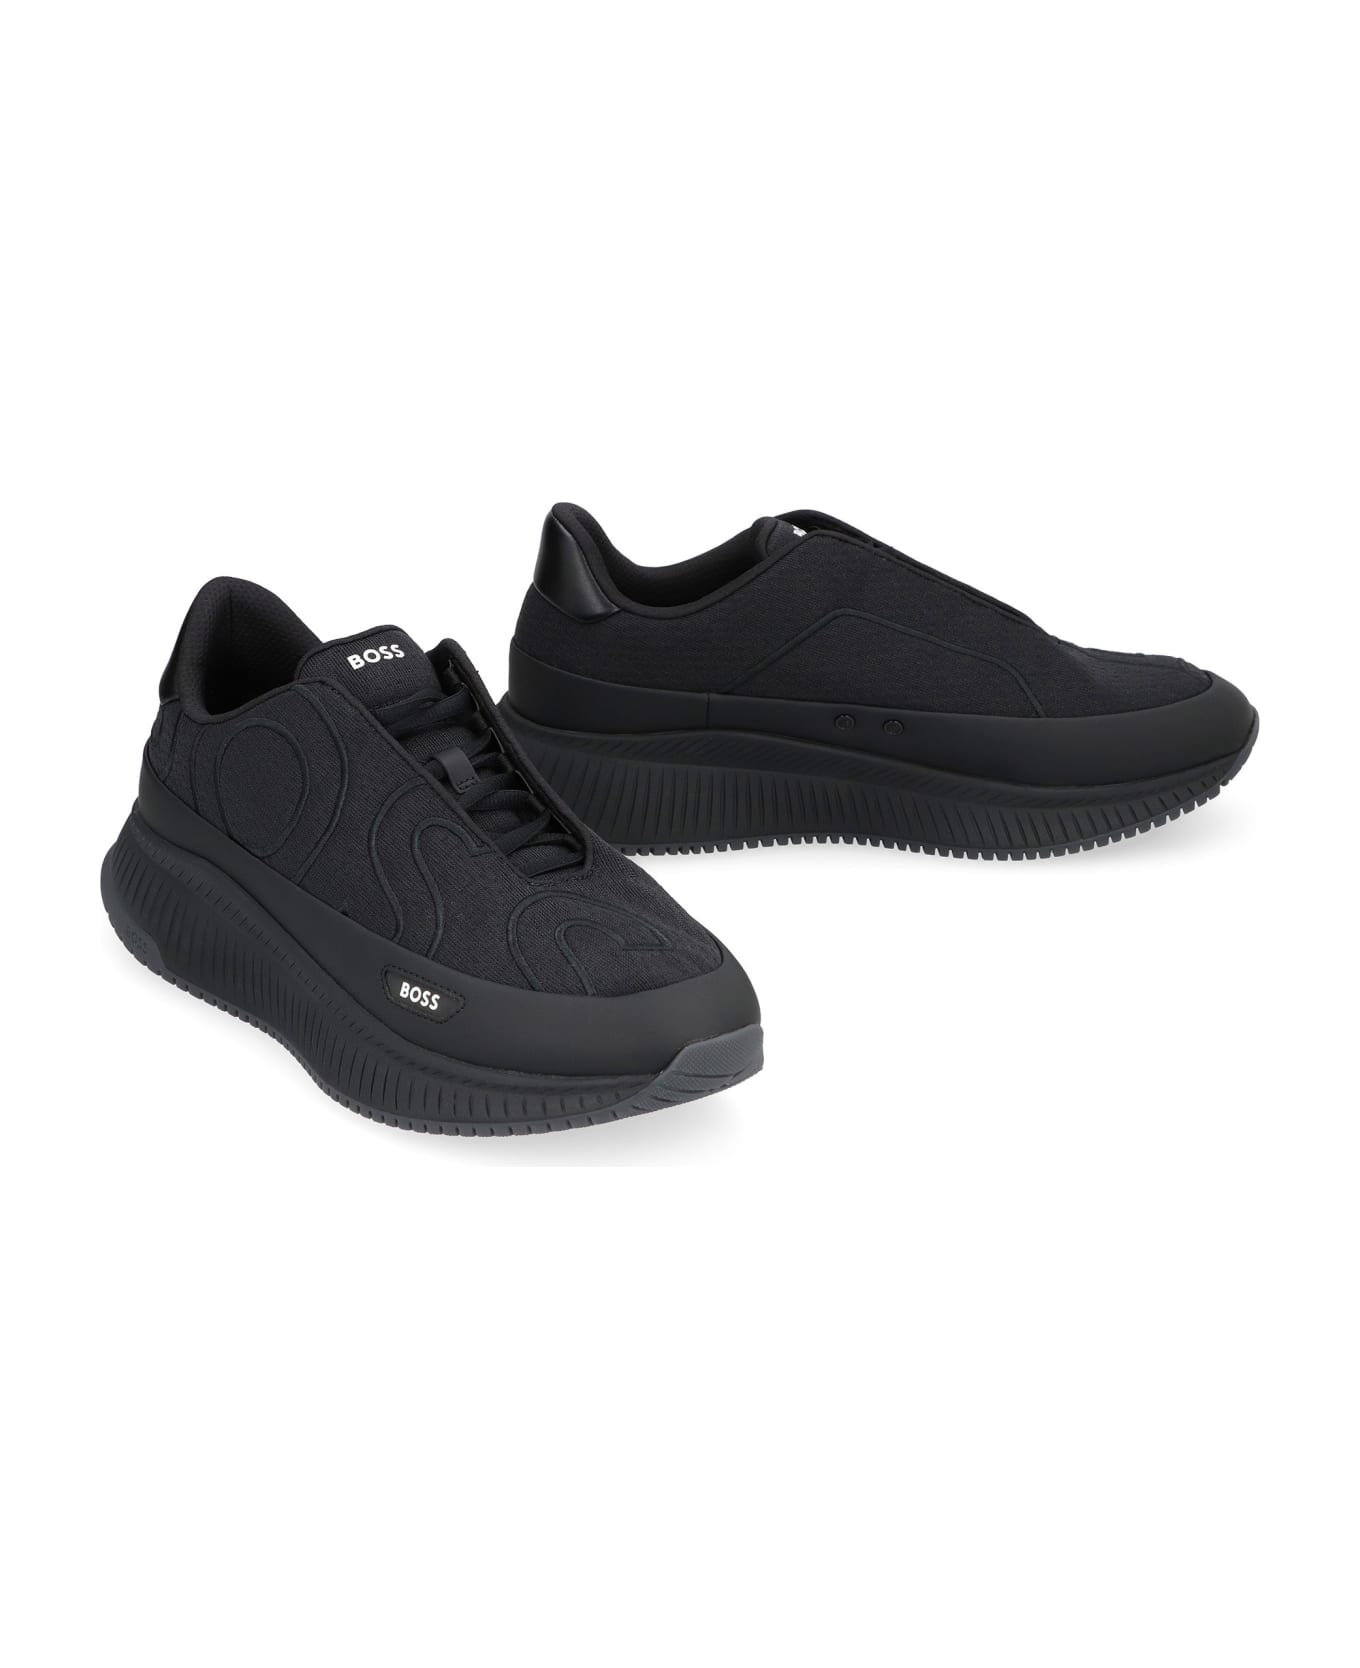 Hugo Boss Fabric Low-top Sneakers - black スニーカー